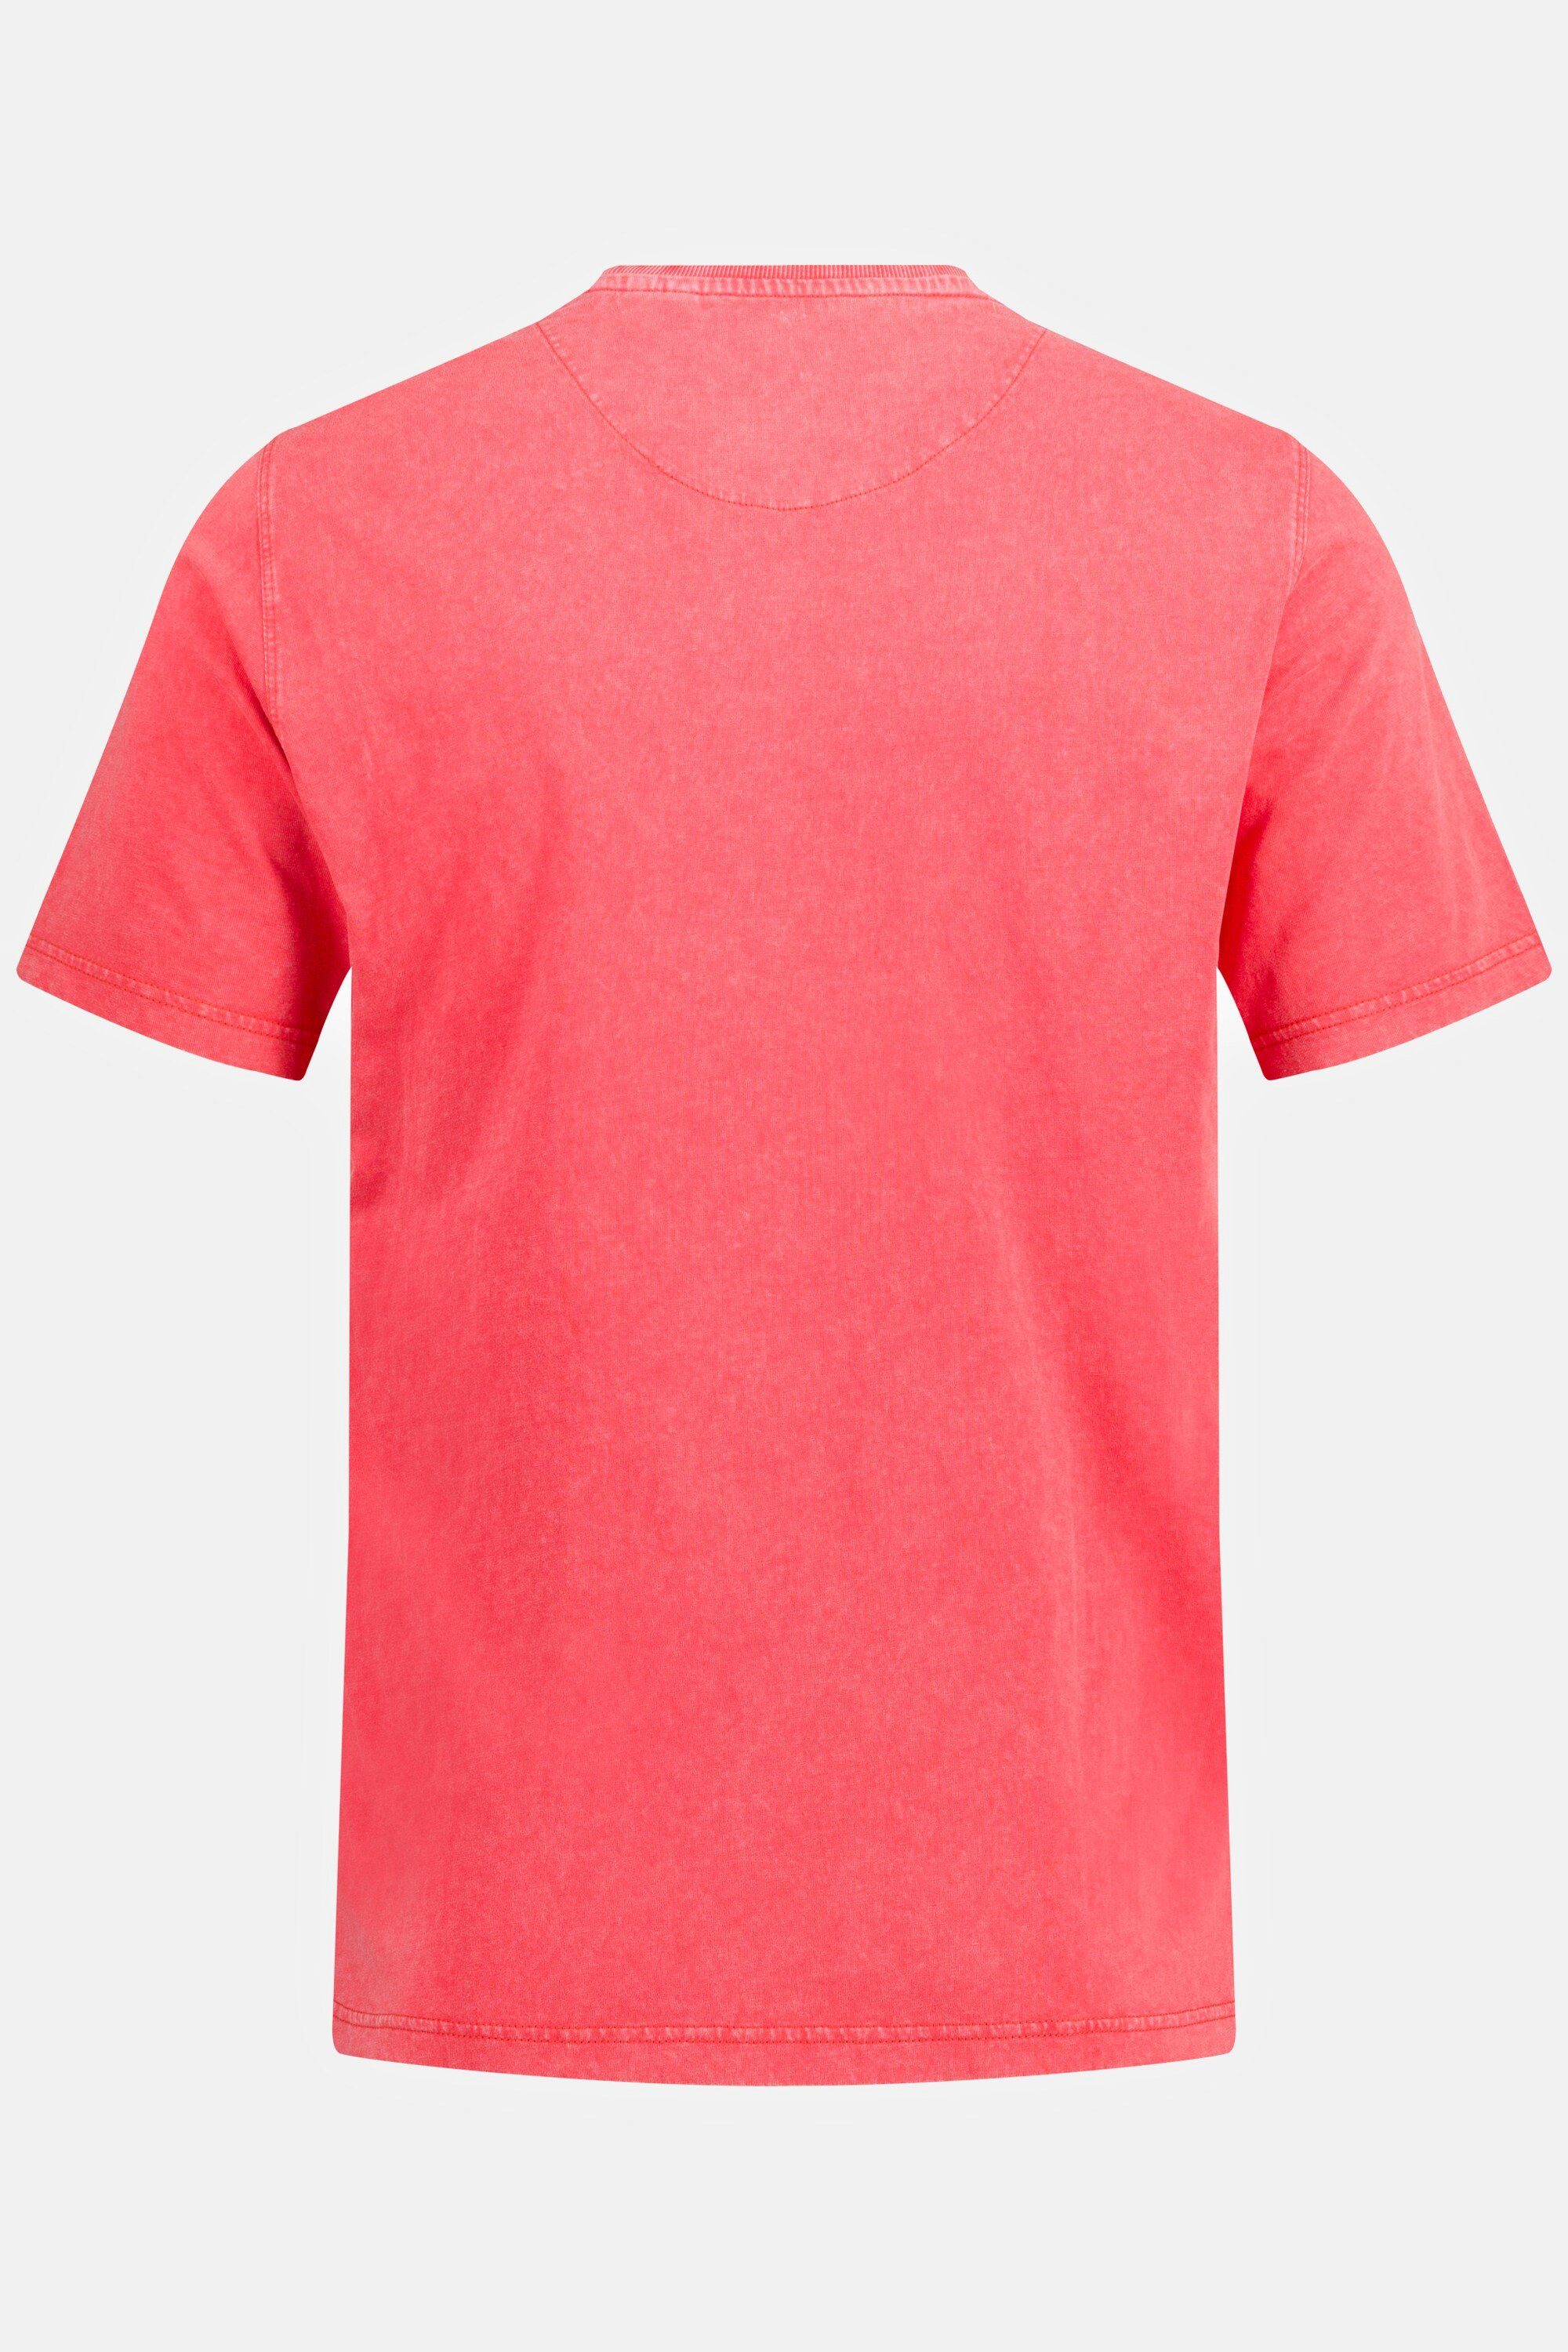 rot JP1880 T-Shirt Rundhals Halbarm Brusttasche T-Shirt